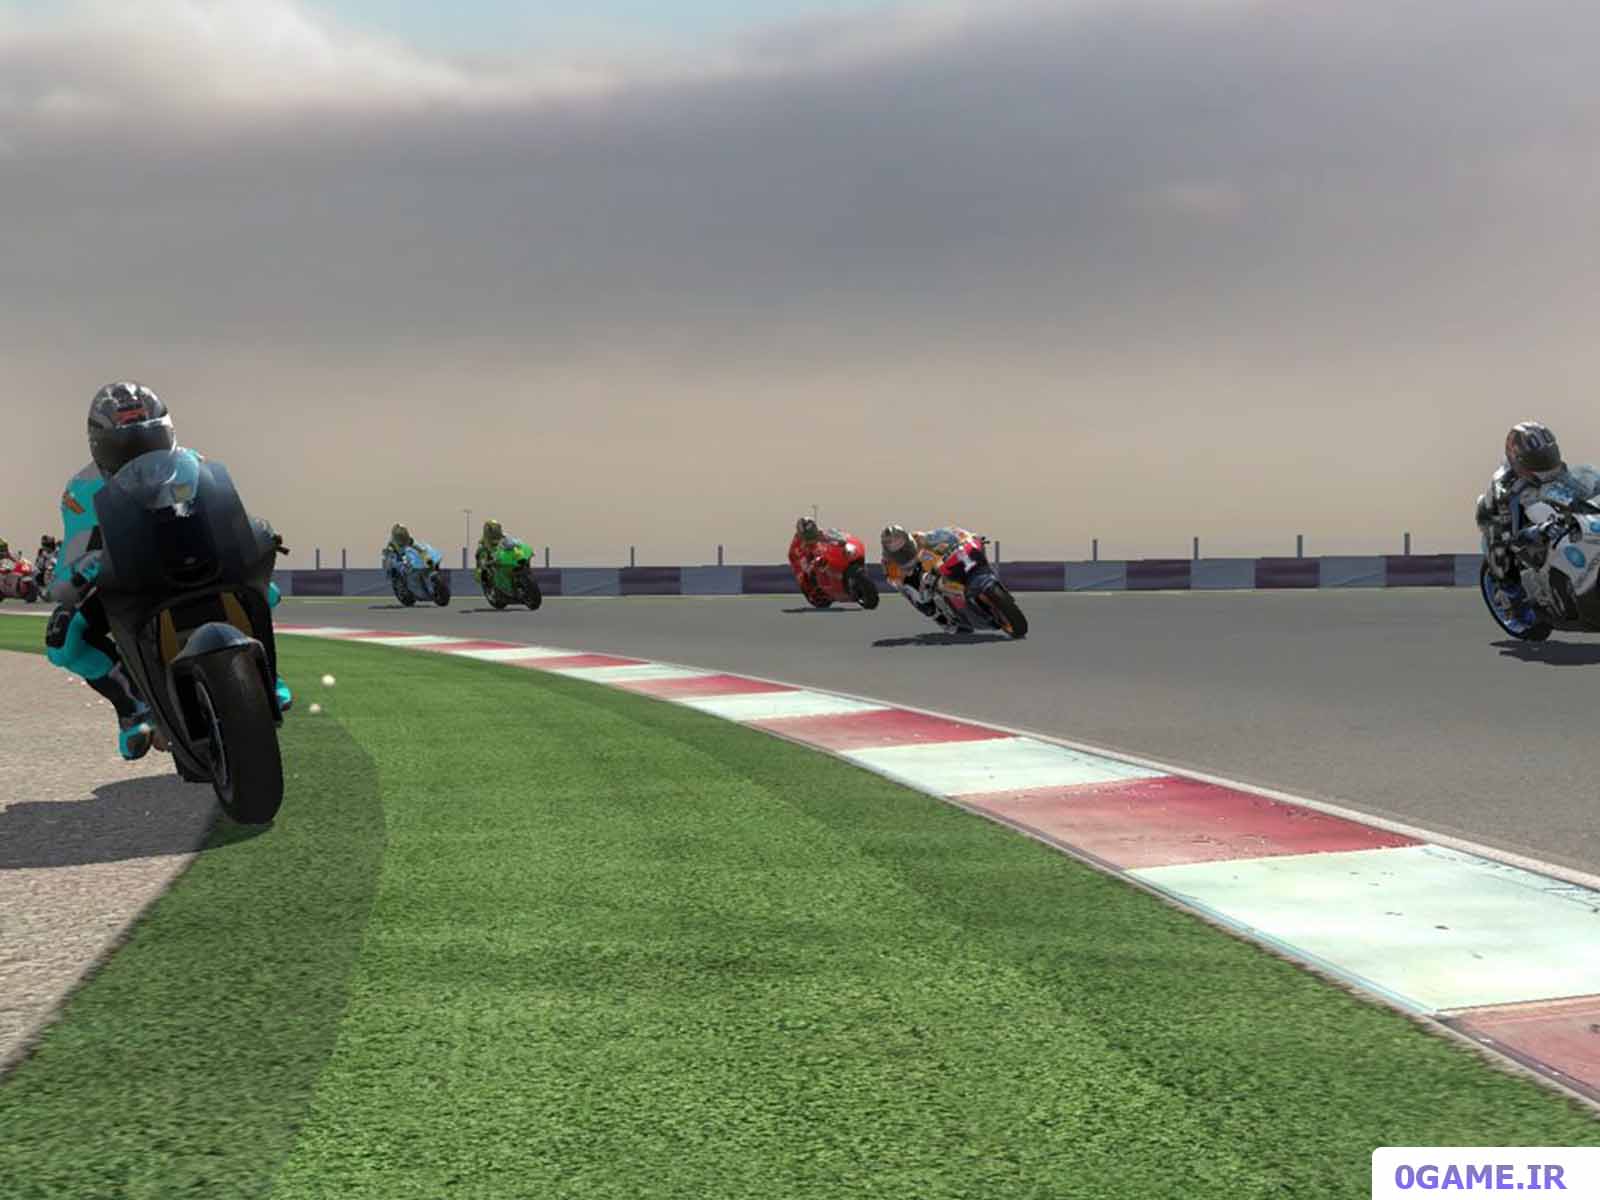 دانلود بازی موتور جی پی 07 (MotoGP) نسخه کامل برای کامپیوتر